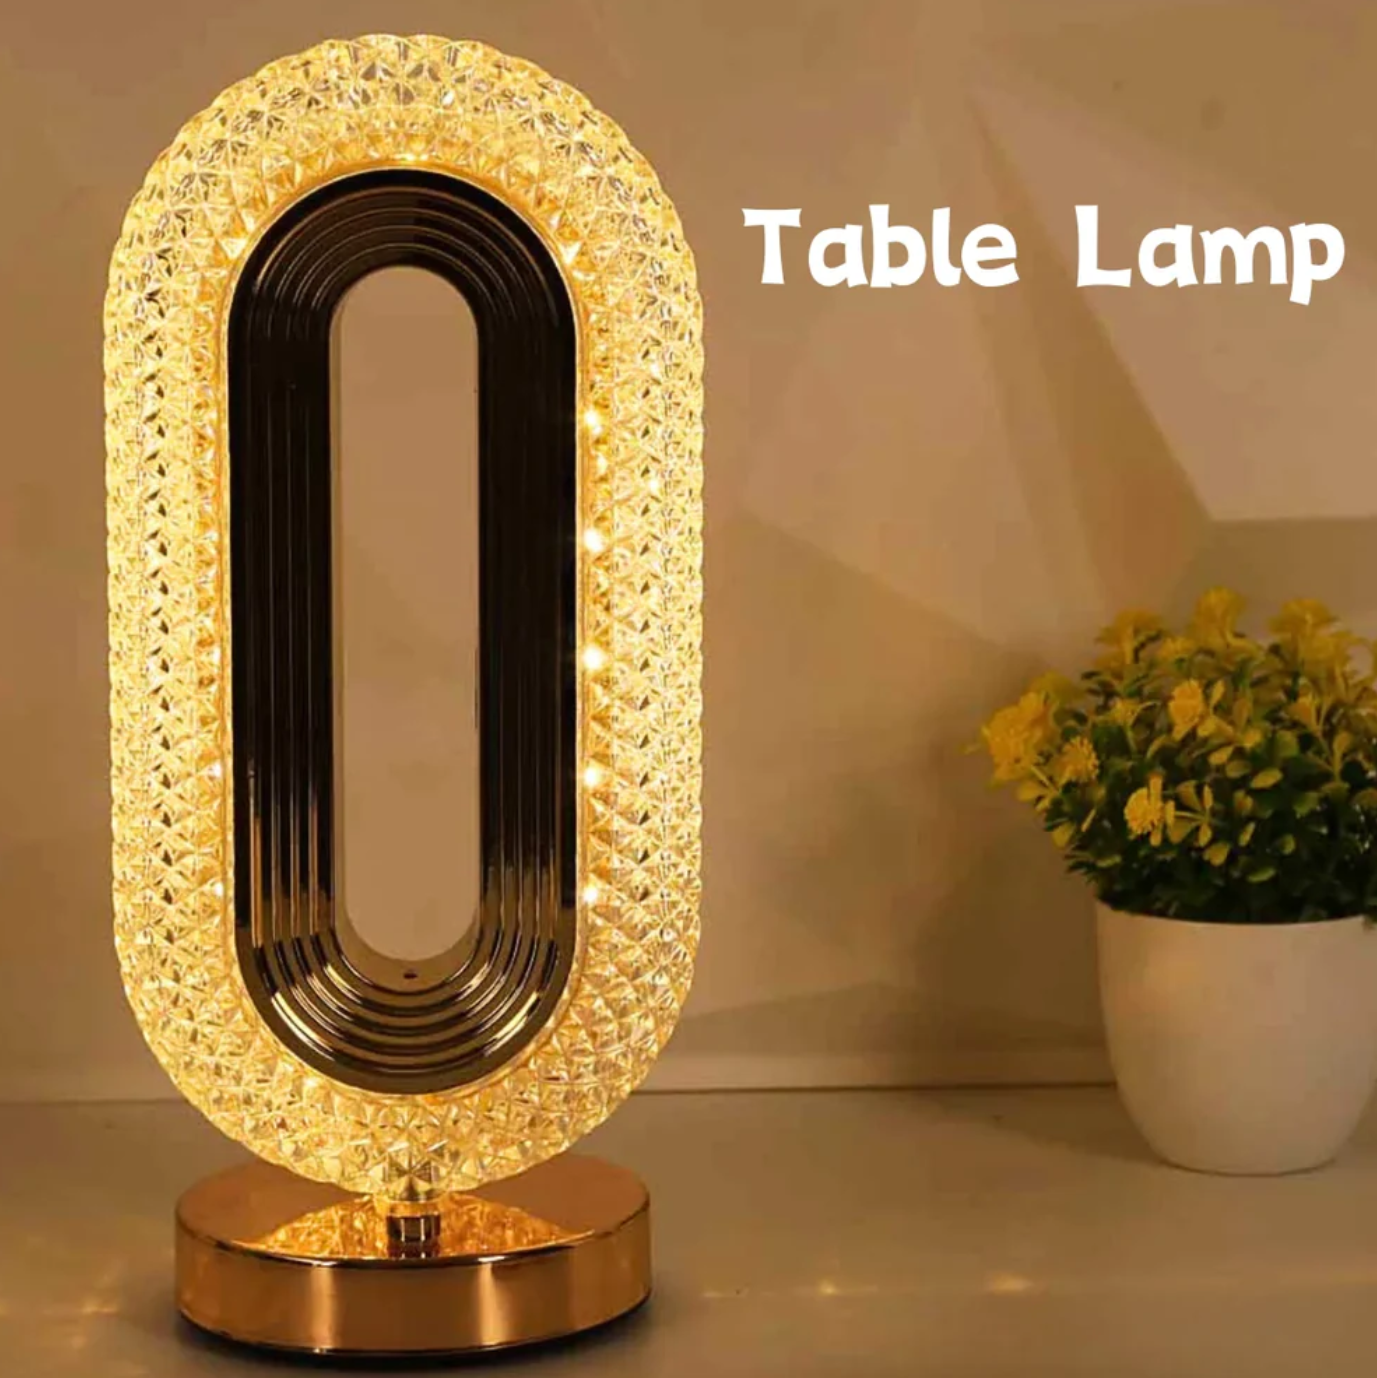 Lampa Luxury, Cristale LED, 3 Moduri De Iluminare, Intensitate Reglabila, Incarcare USB